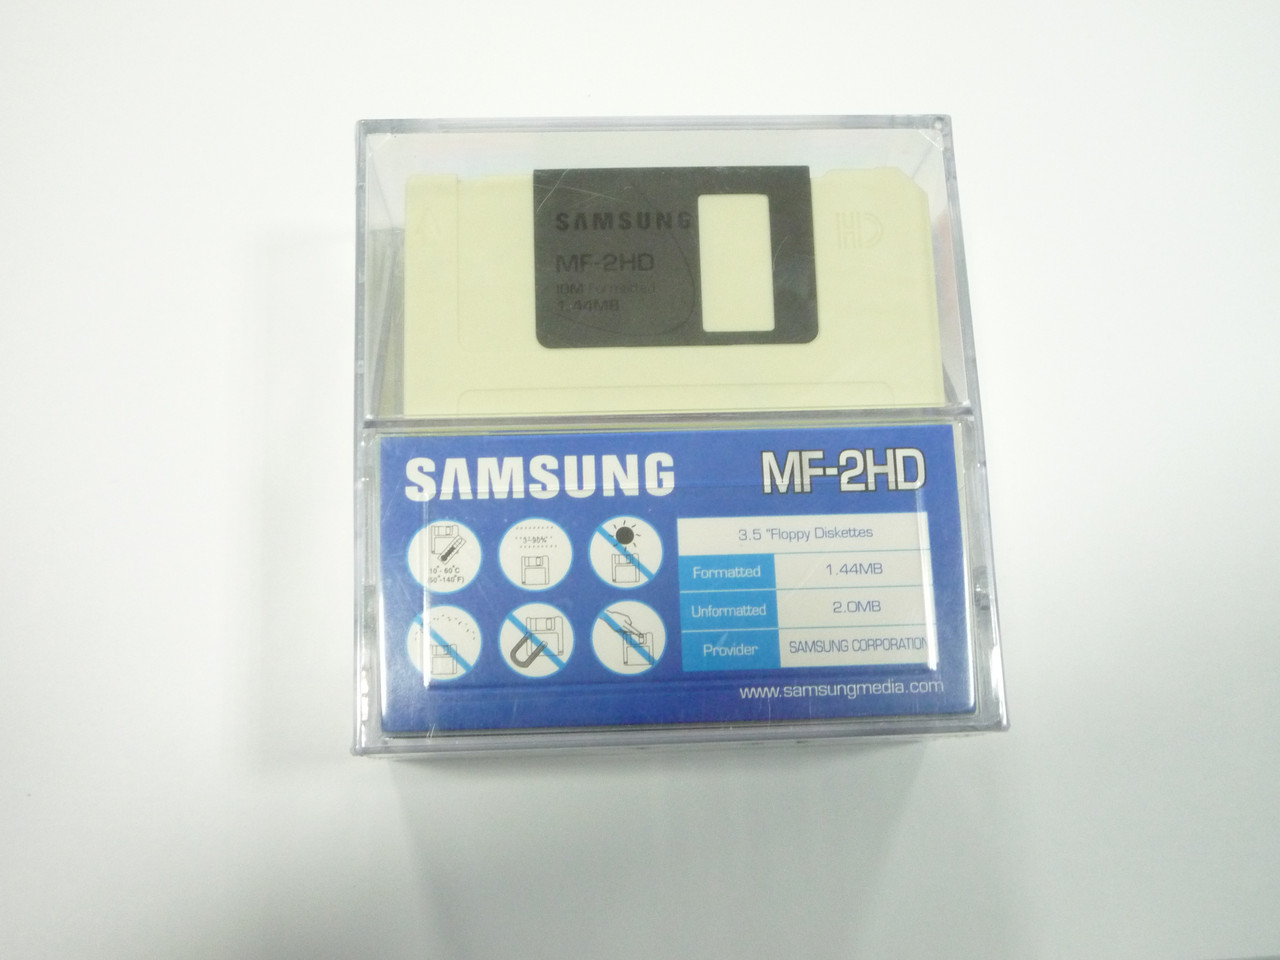 Дискета 3.5 дюйма - Samsung MF-2HD, 1.44Mb